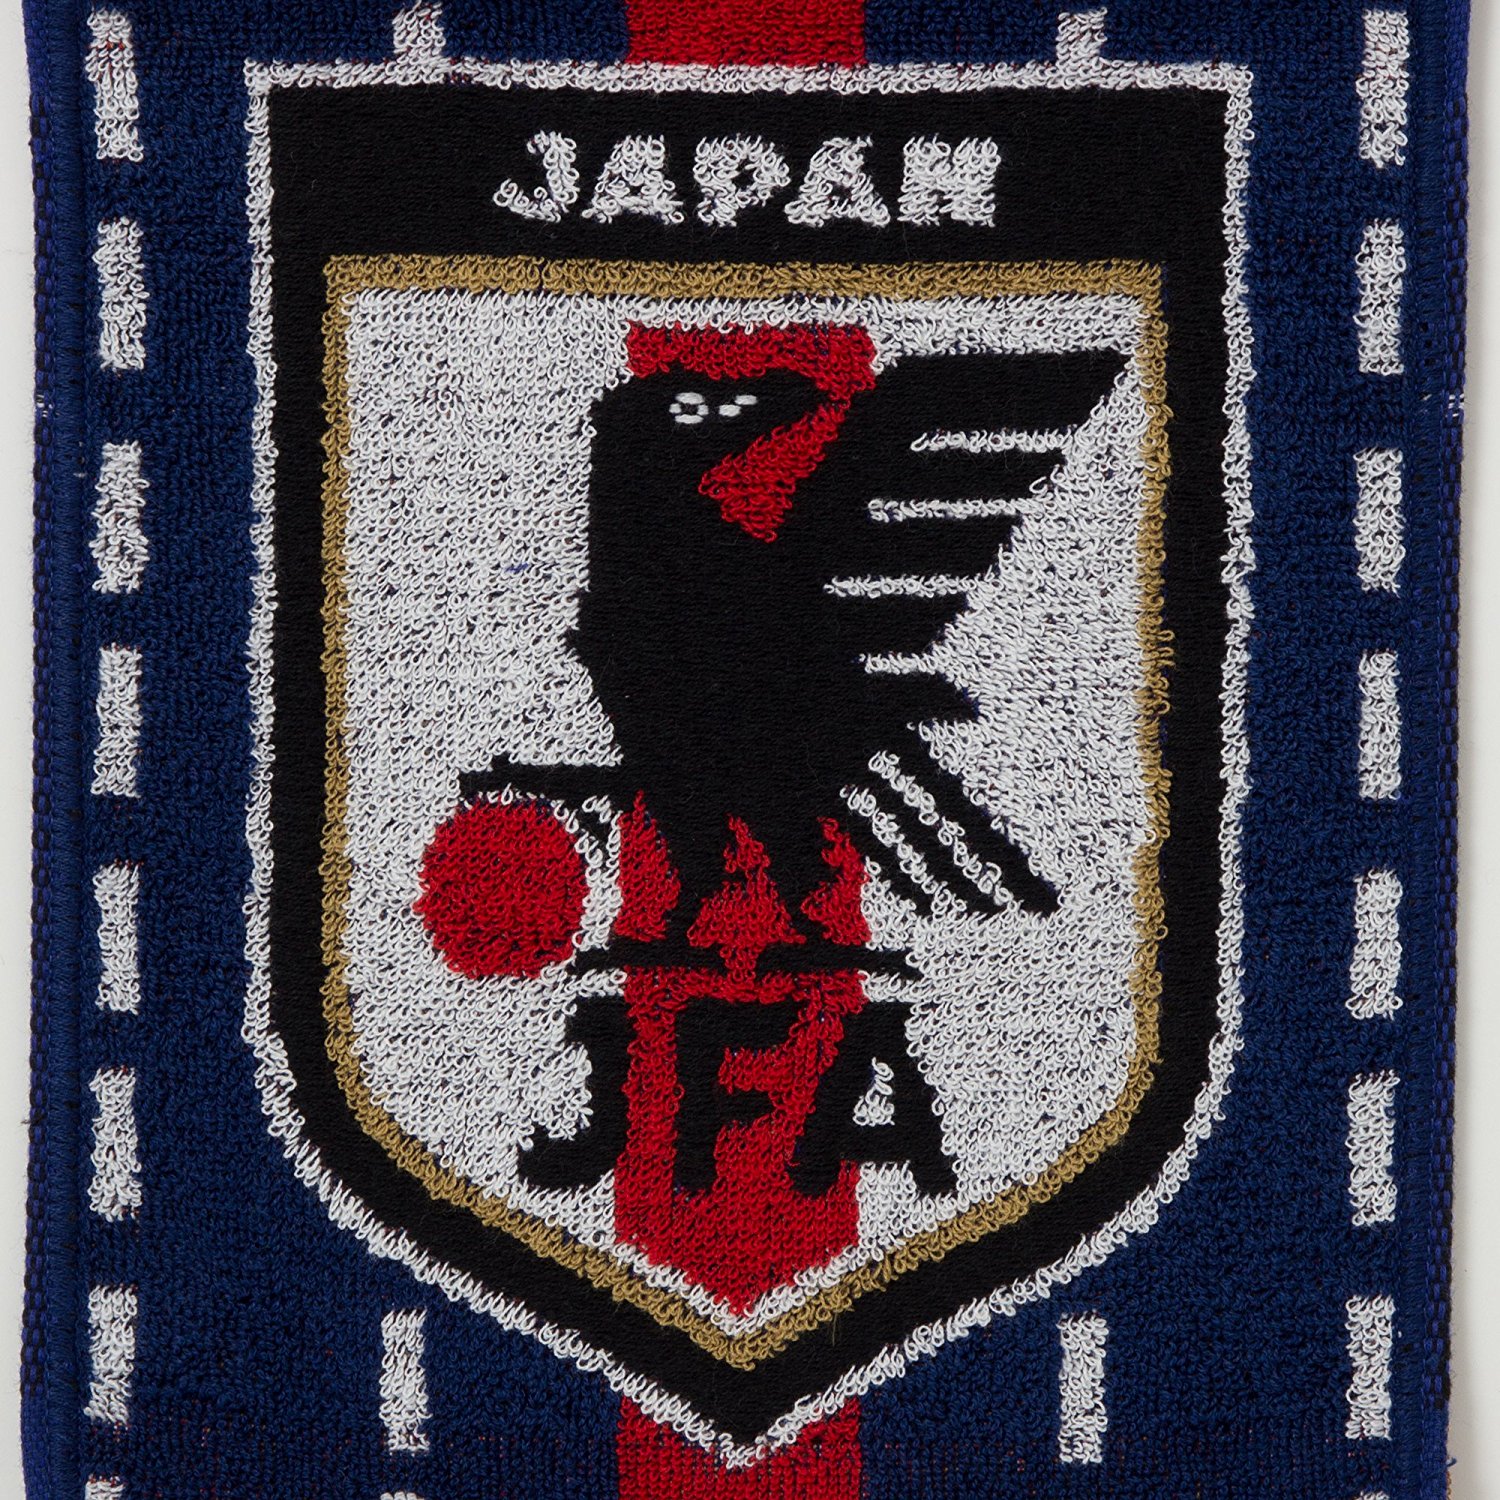 【JFA】 サッカー日本代表 2018年 タオルマフラー 今治ブランド認定(日本代表)